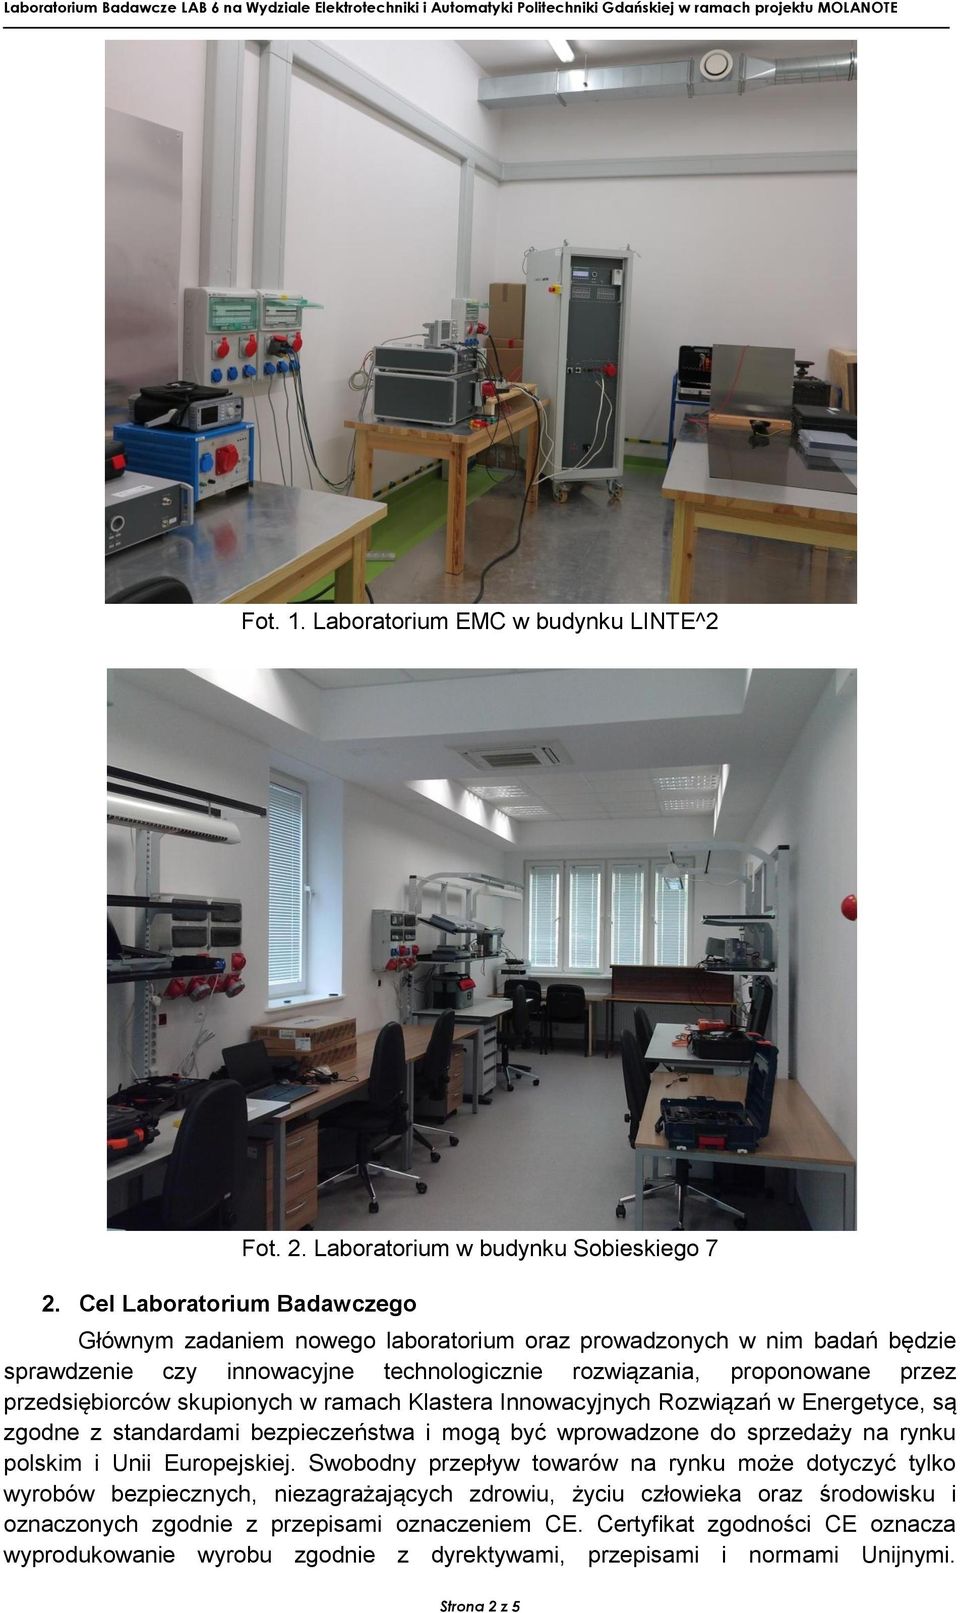 Laboratorium w budynku Sobieskiego 7 Głównym zadaniem nowego laboratorium oraz prowadzonych w nim badań będzie sprawdzenie czy innowacyjne technologicznie rozwiązania, proponowane przez